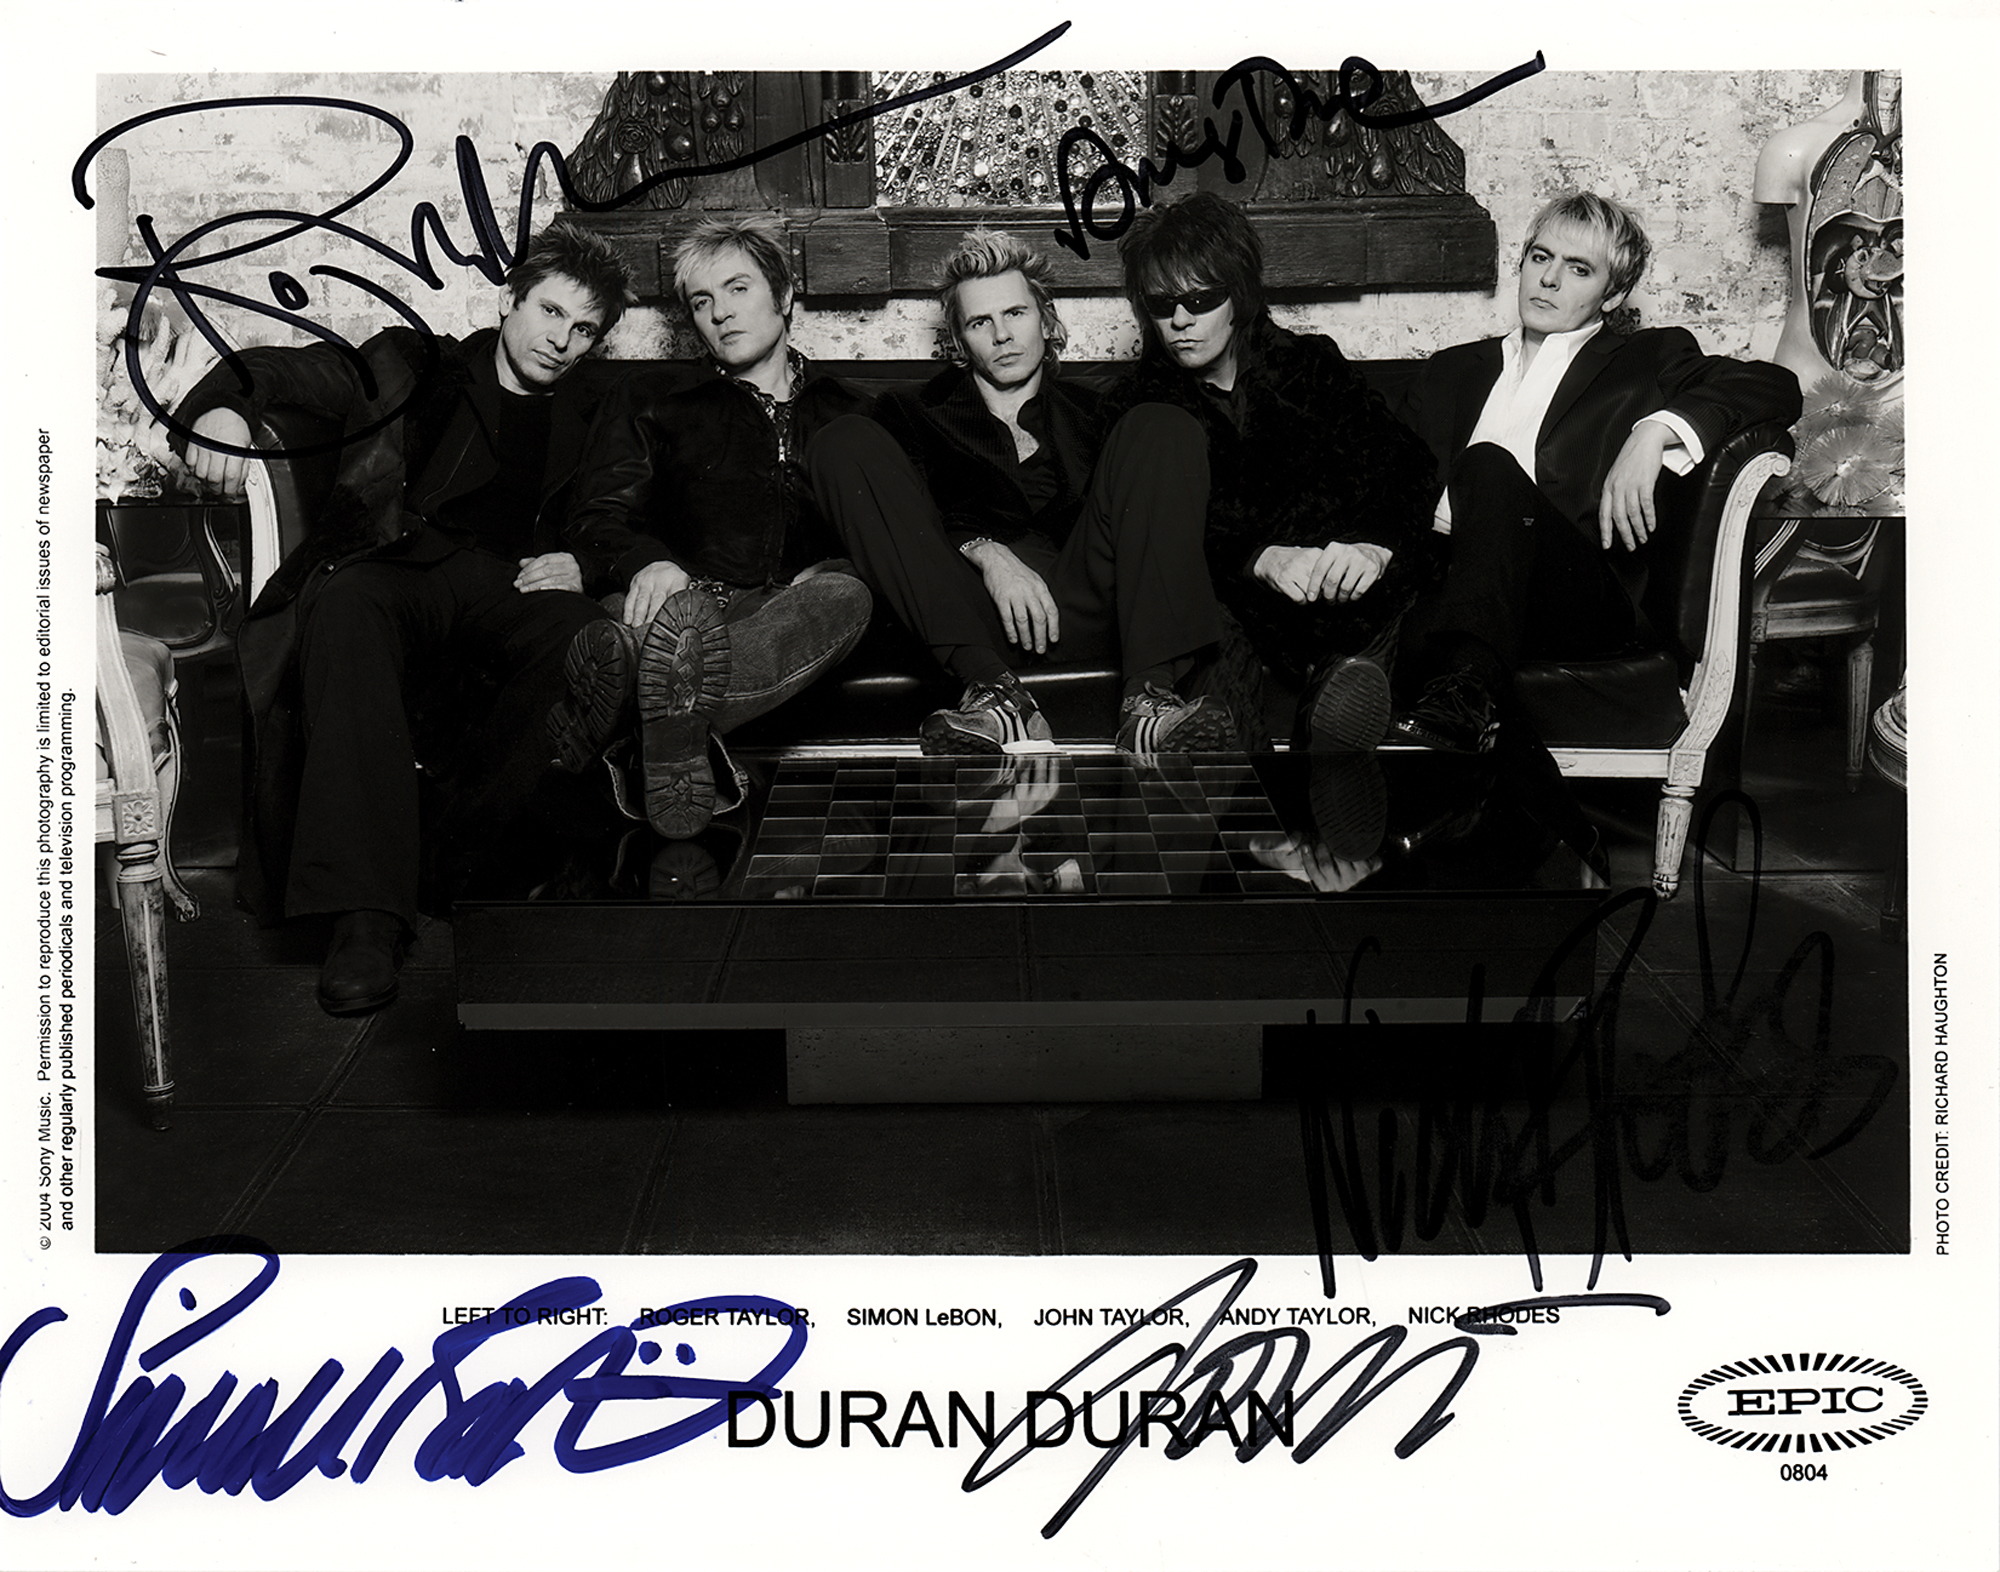 Lot #2314 Duran Duran Signed Photograph